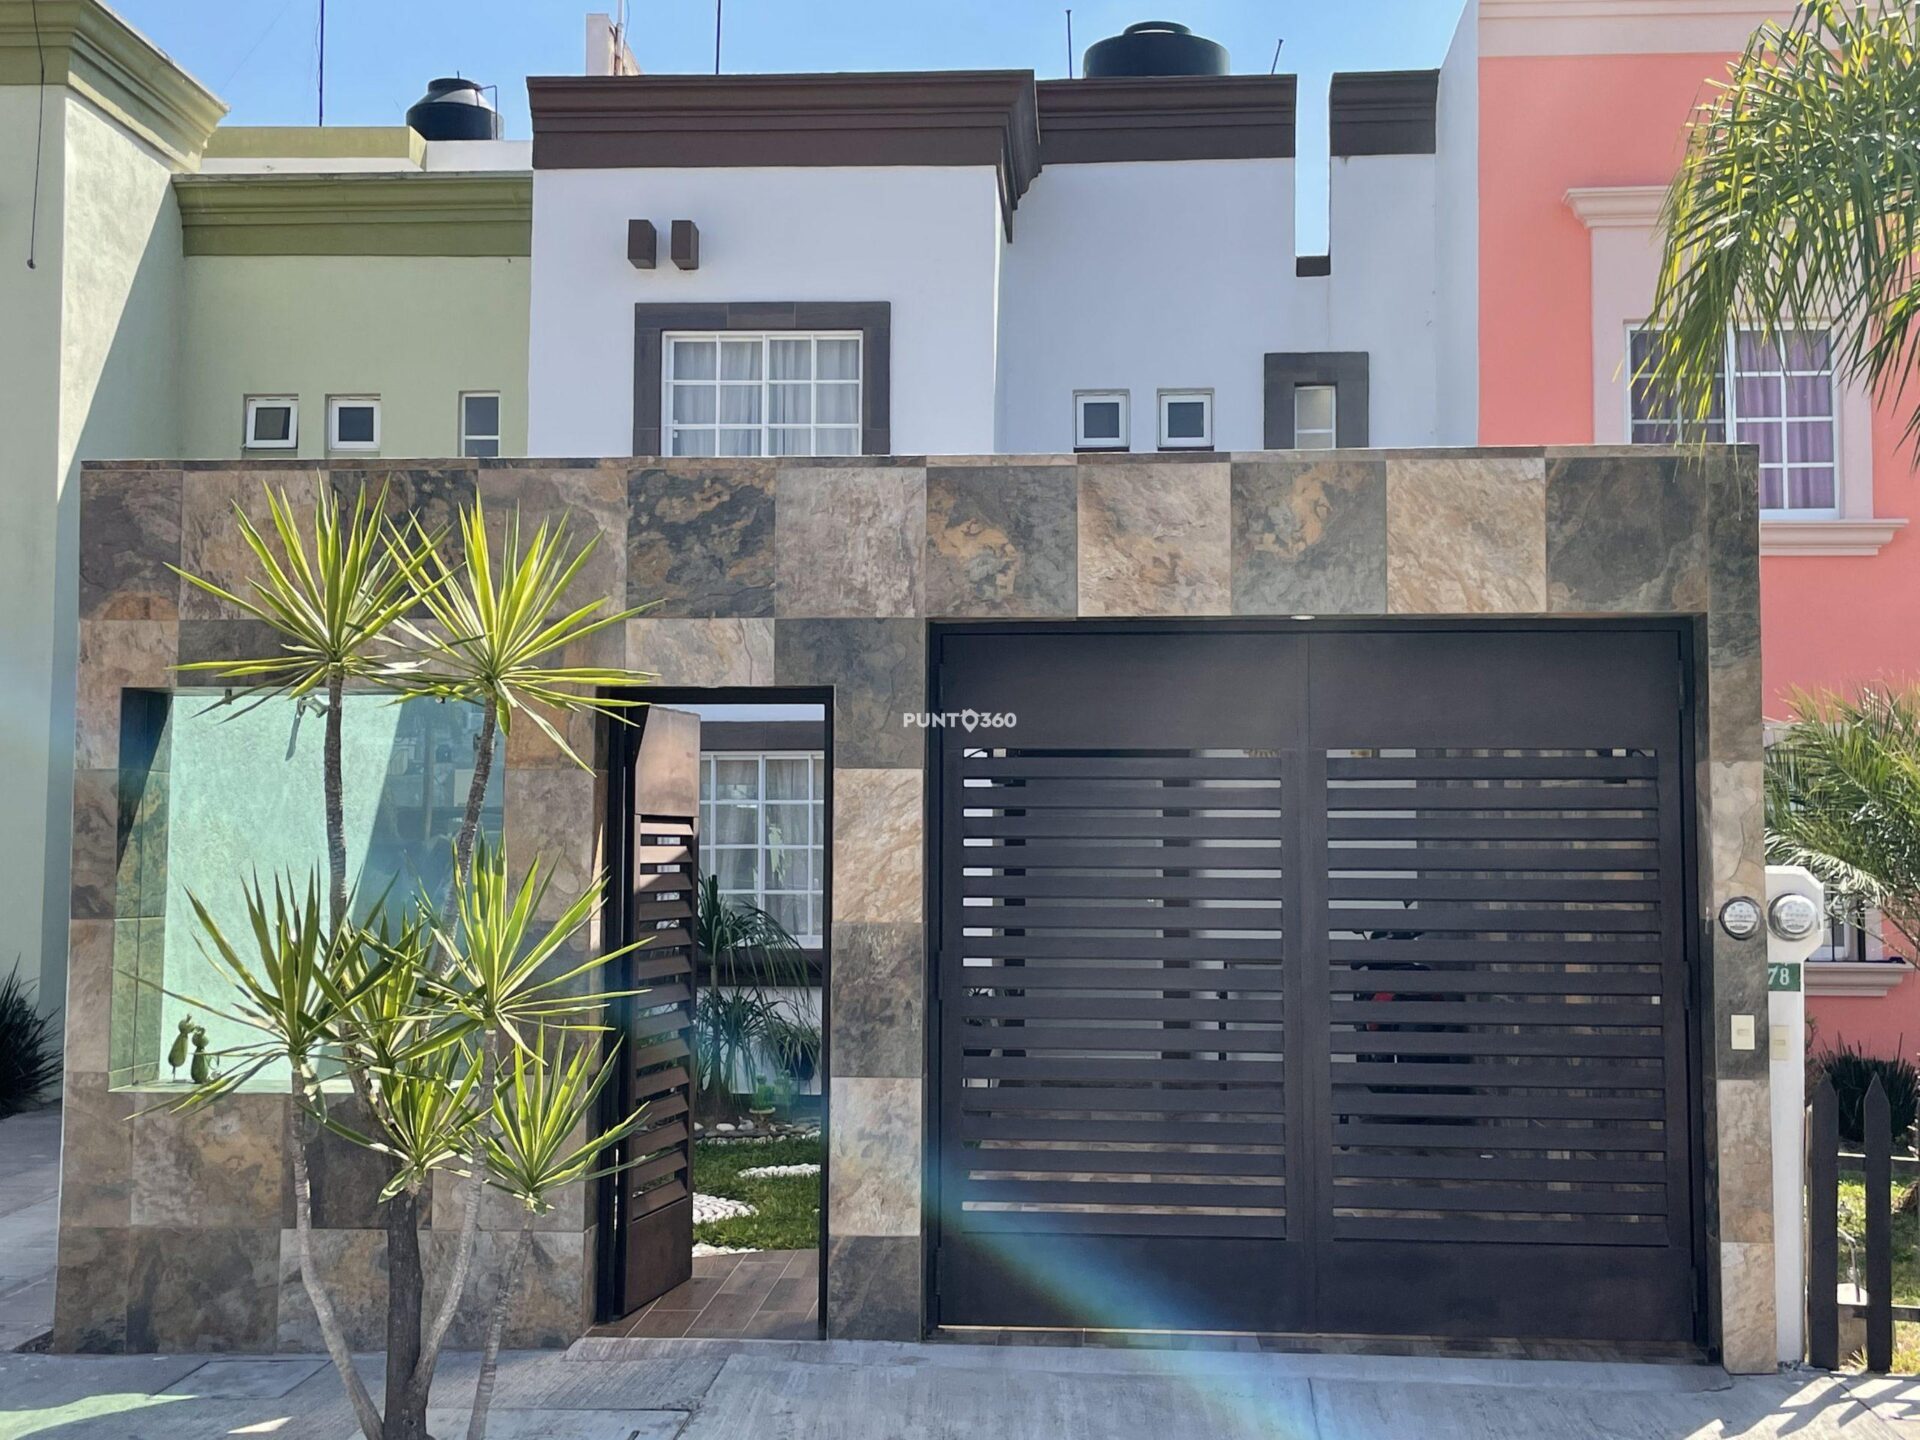 Casa en venta Moroleón Guanajuato, fraccionamiento rinconadas – Punto360  Inmuebles